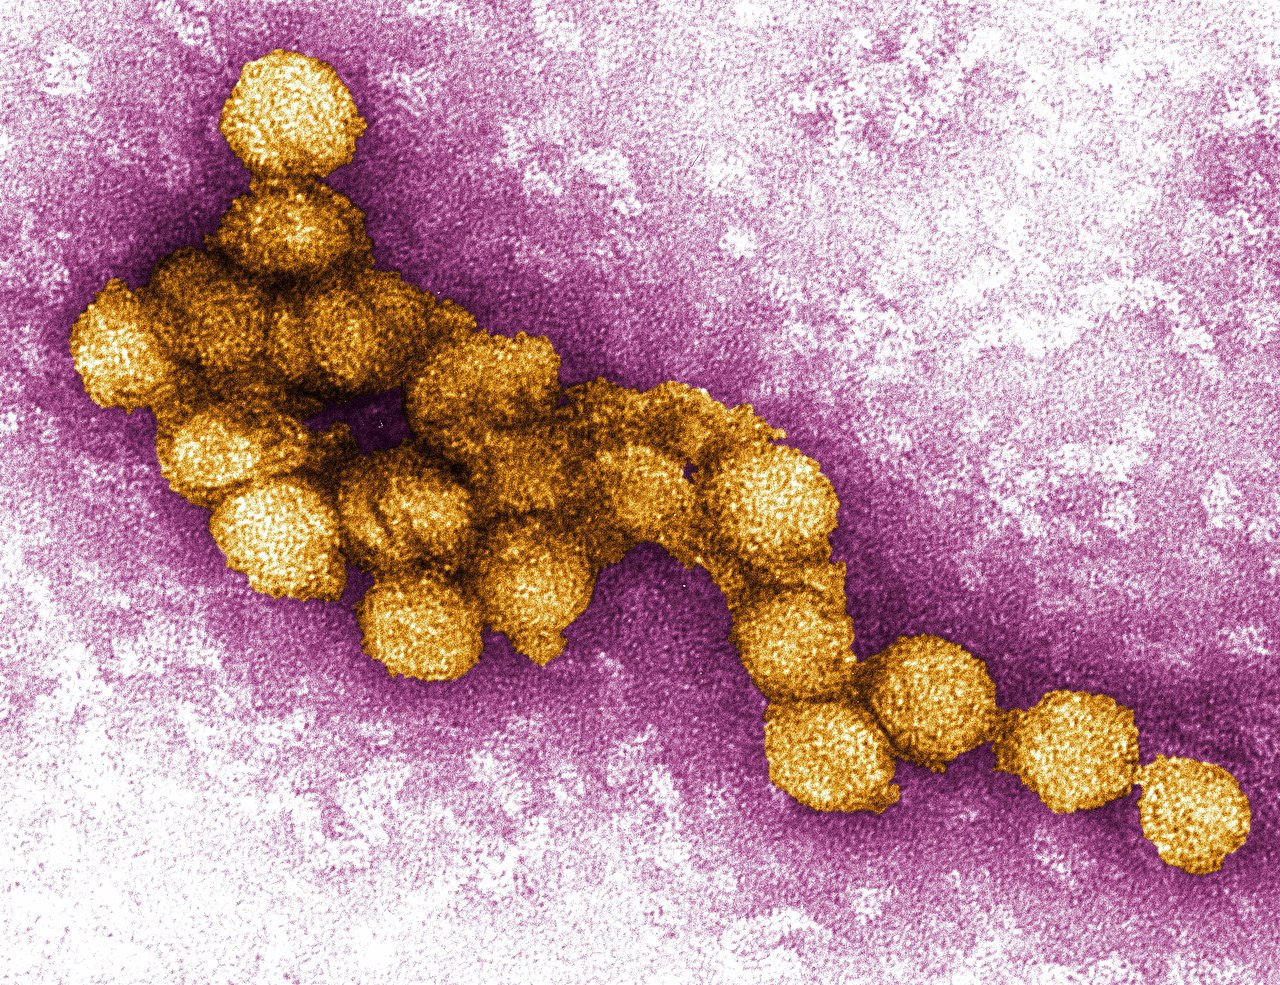 West-Nil-Virus: Symptome und Behandlung